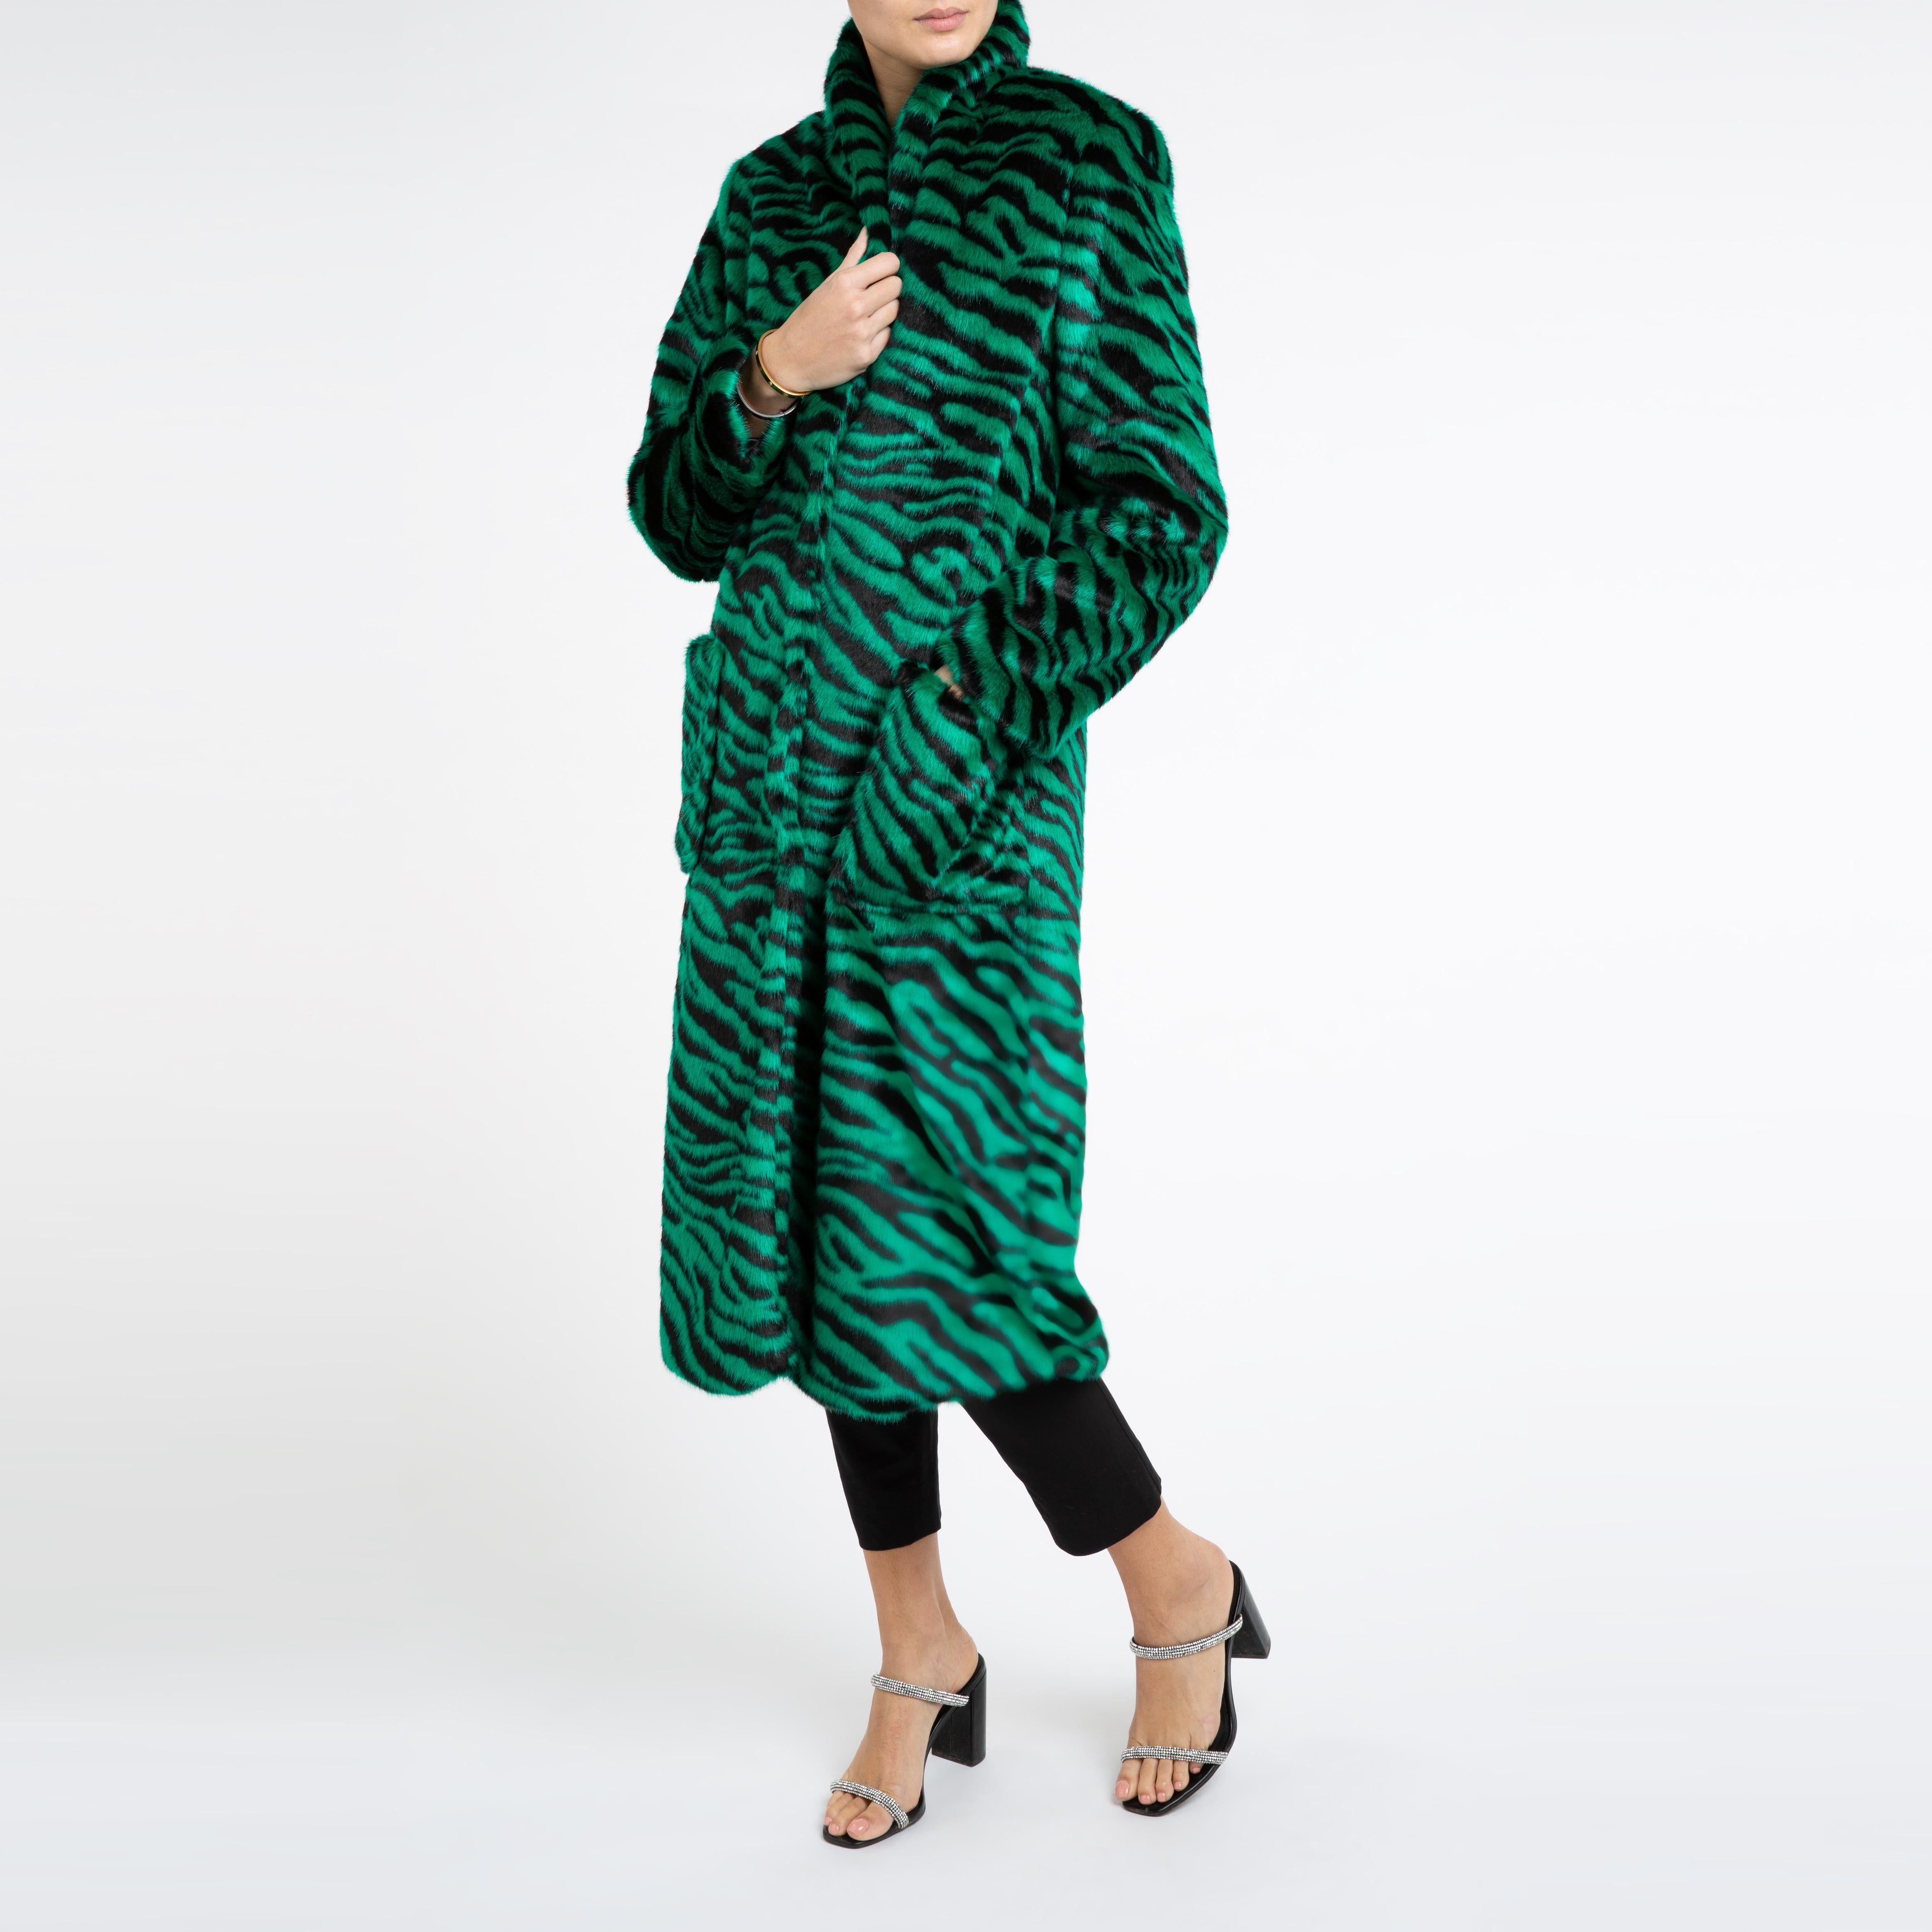 Verheyen London Esmeralda Faux Fur Coat in Emerald Green Zebra Print size uk 10 For Sale 1